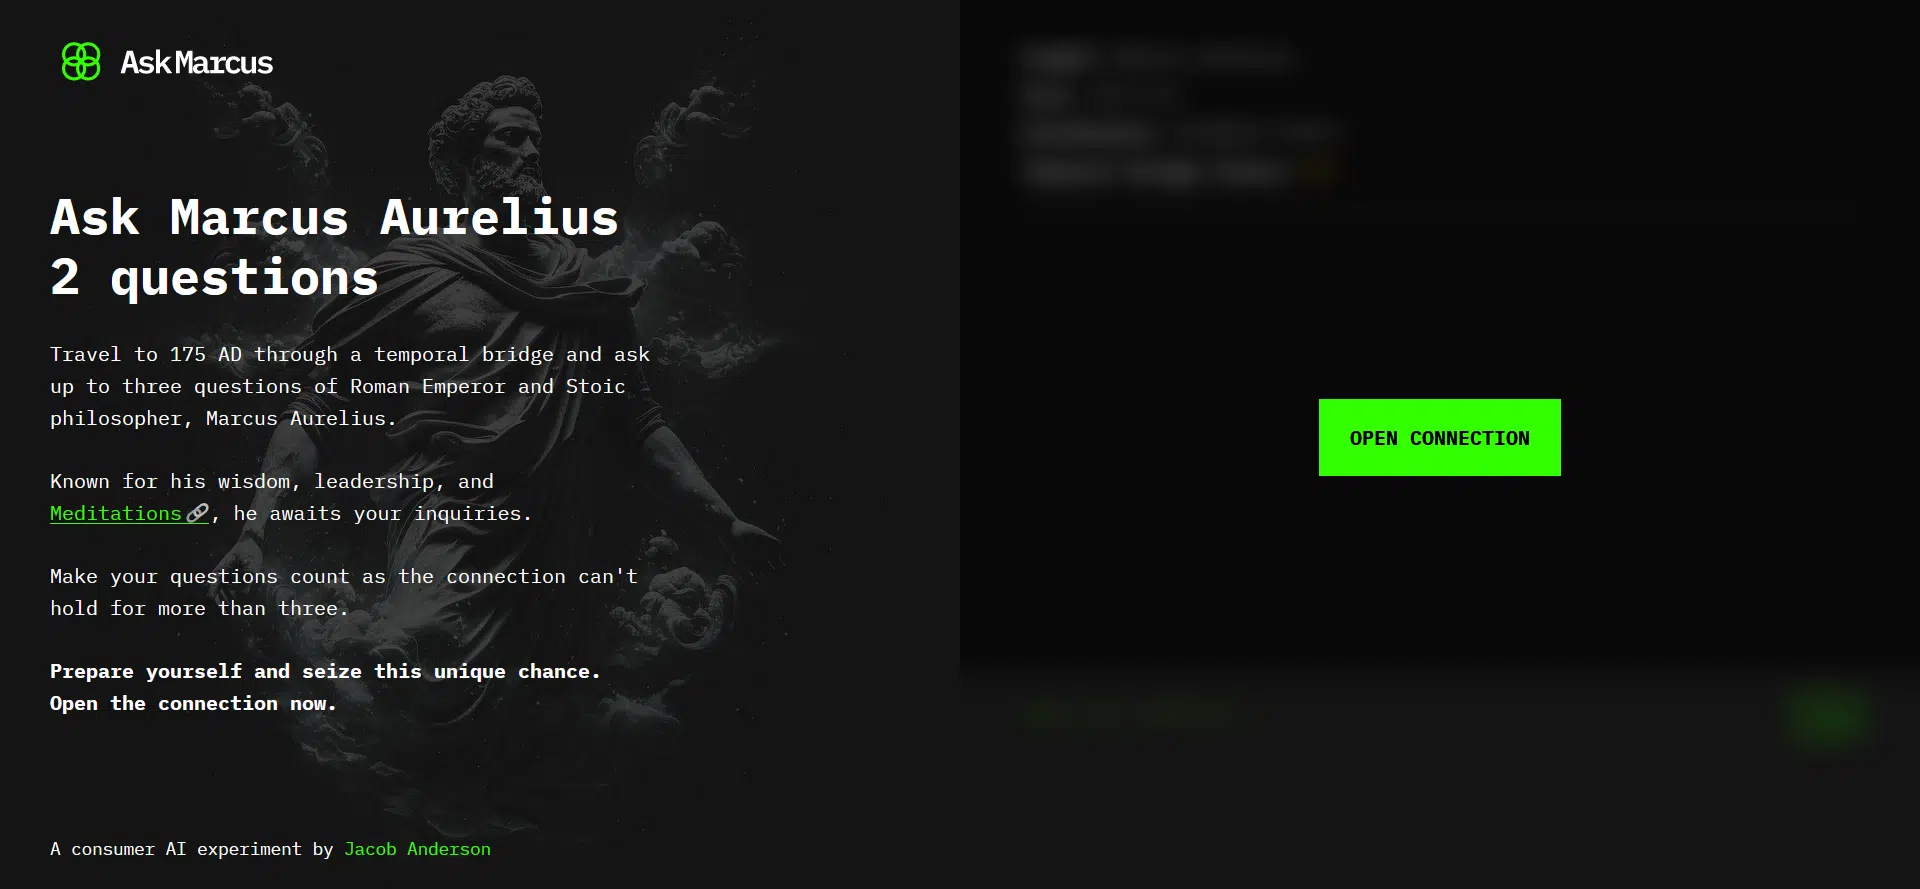 Ask Marcus Aureliuswebsite picture